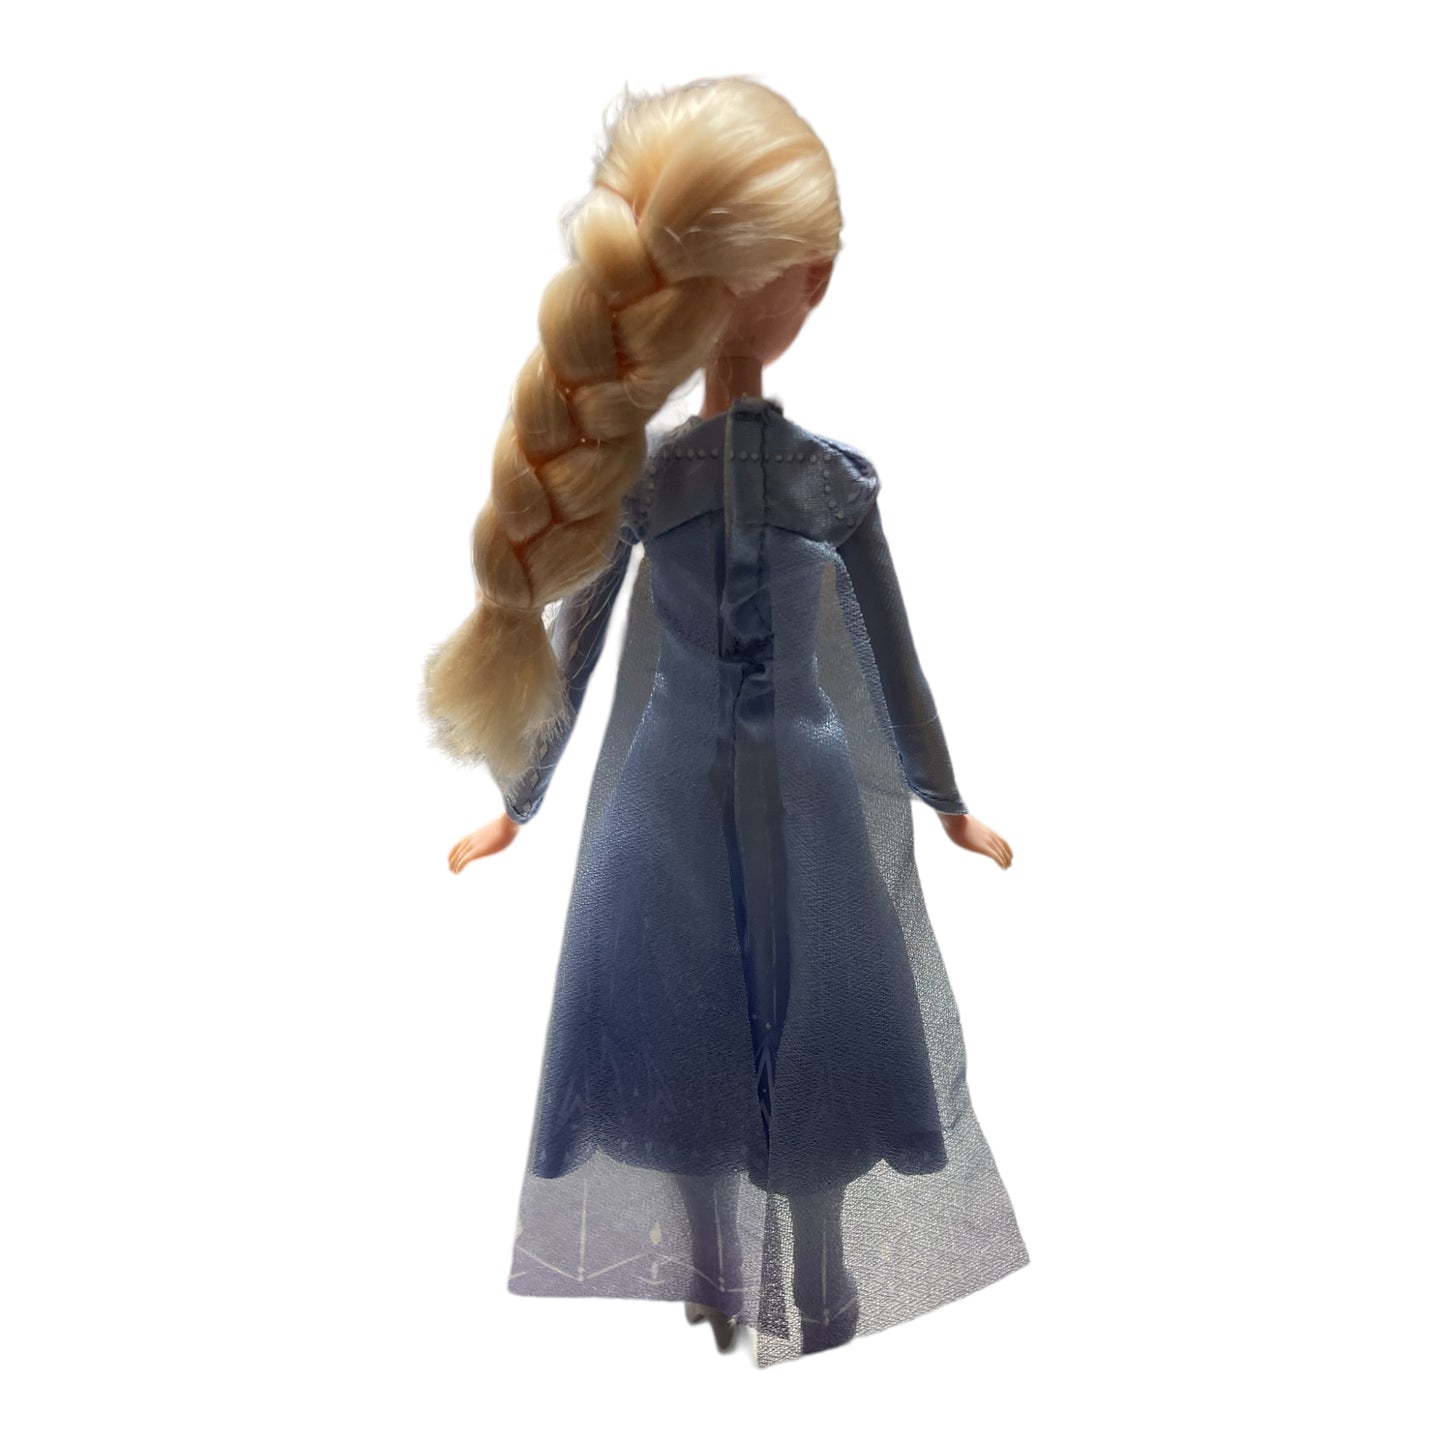 Hasbro Disney Frozen 2 Fashion Doll Elsa